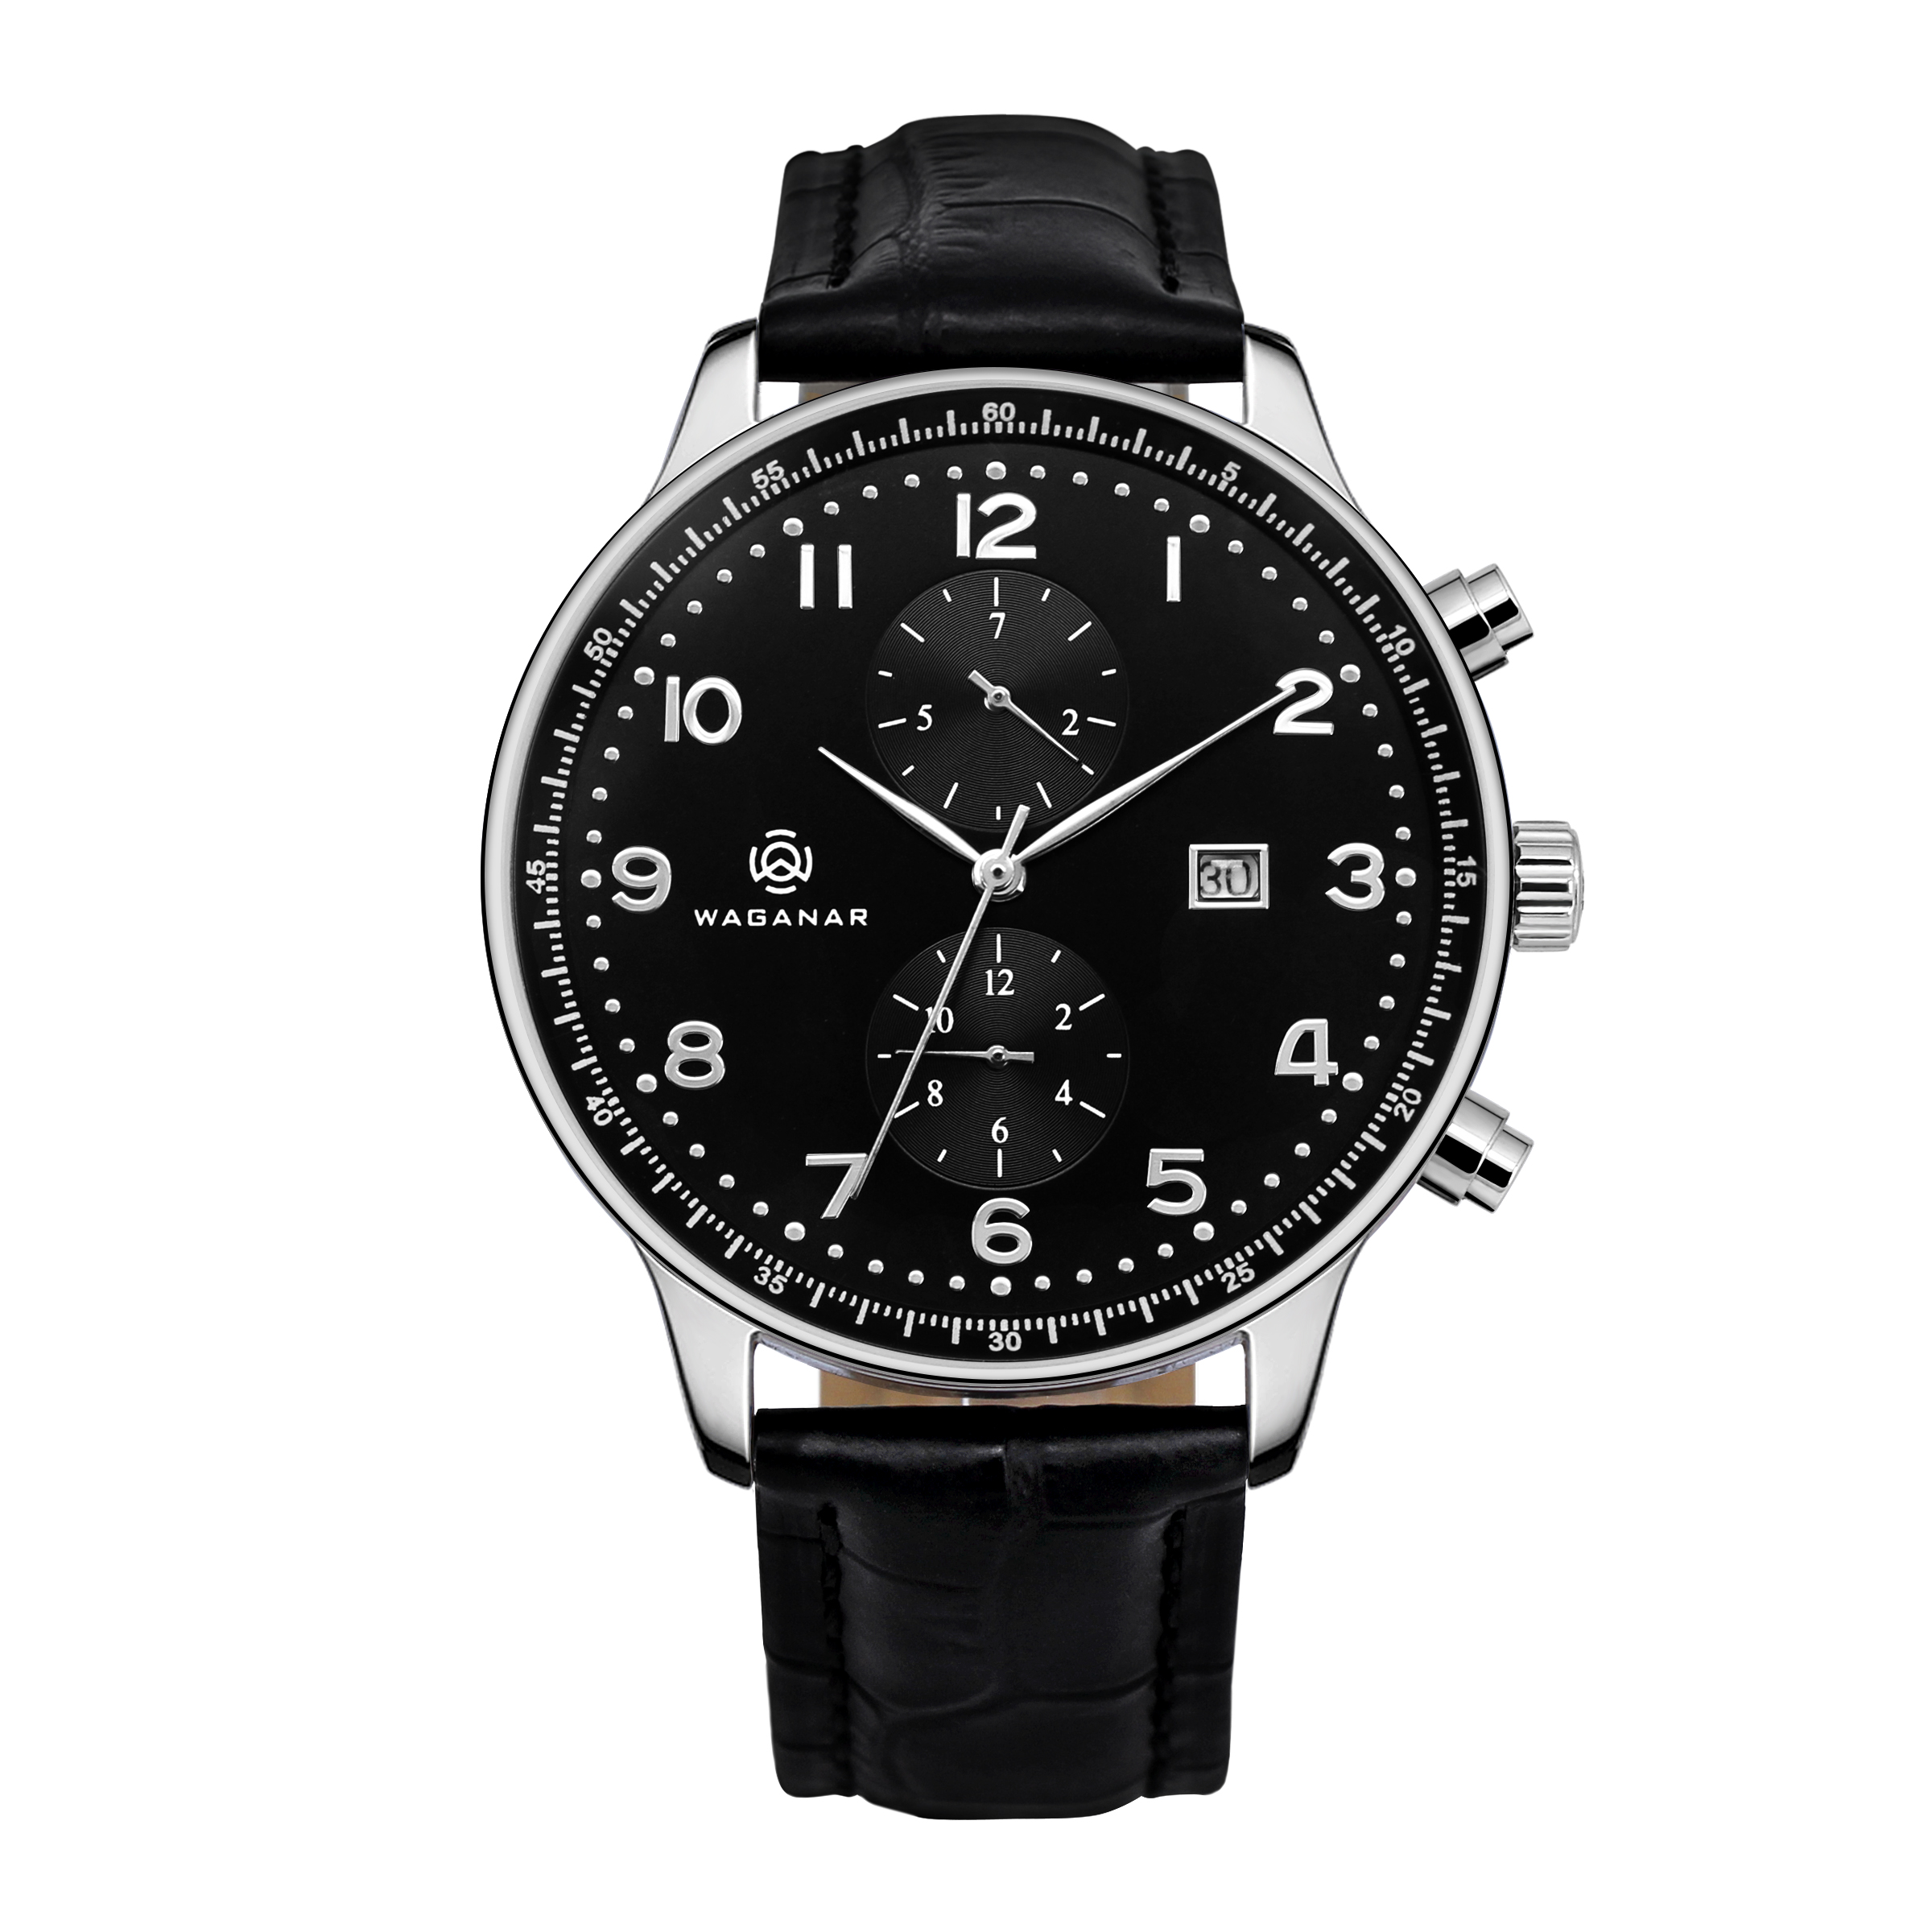 深圳市不锈钢手表-JY-AL158厂家不锈钢手表-JY-AL158多少钱 不锈钢手表-JY-AL158报价 不锈钢手表-JY-AL158怎么卖